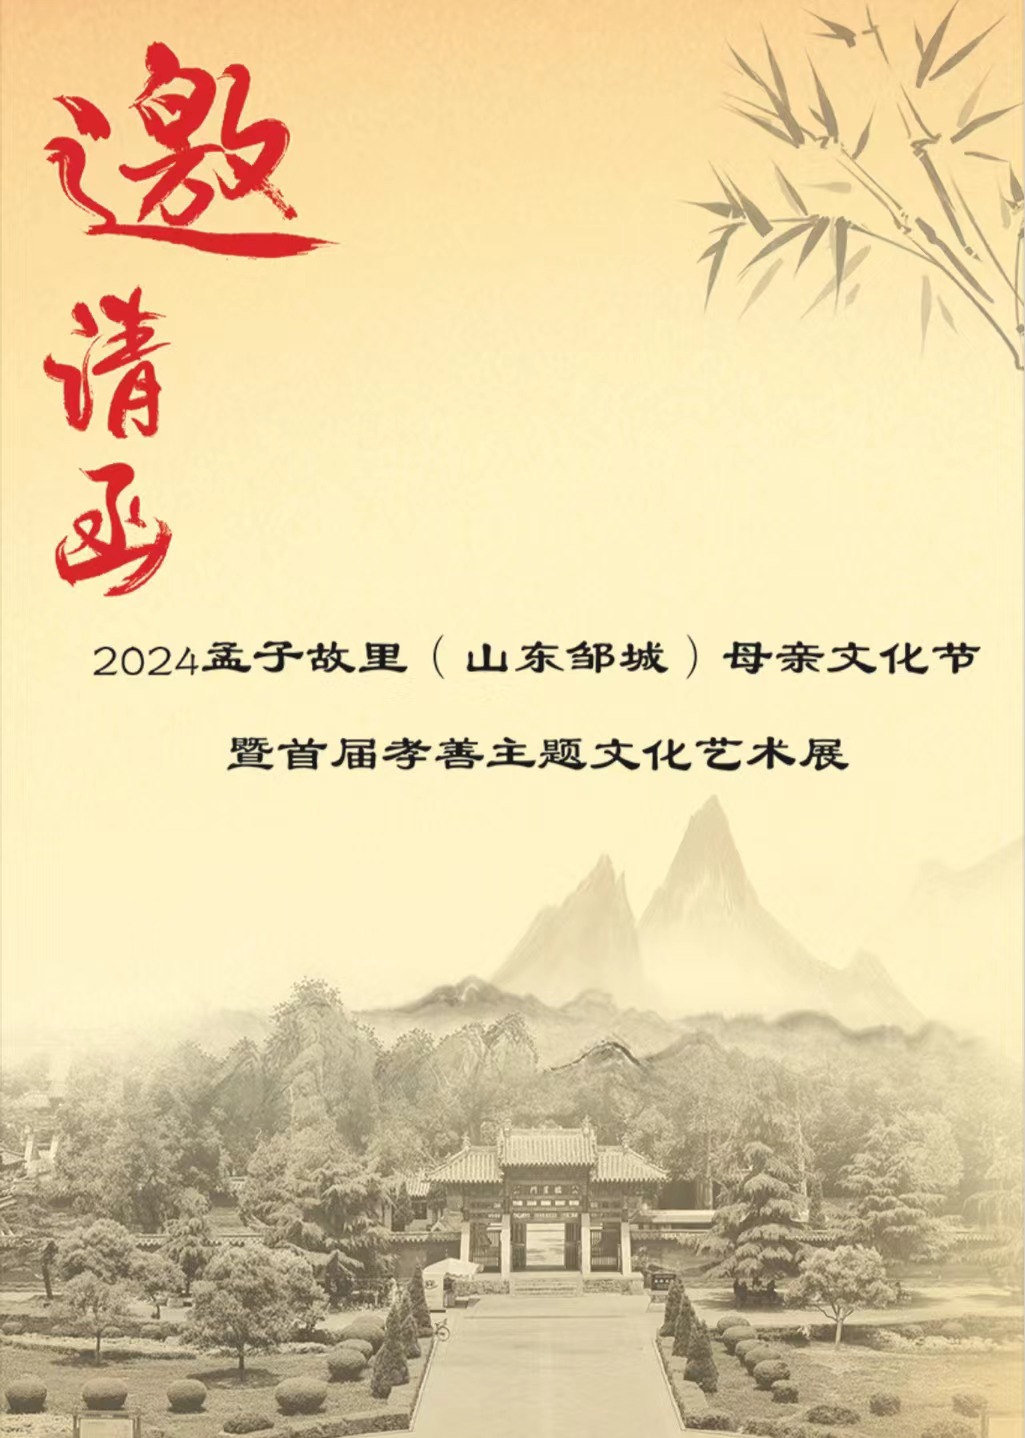 孟子故里母亲文化节5月8日将在邹城博物馆开幕